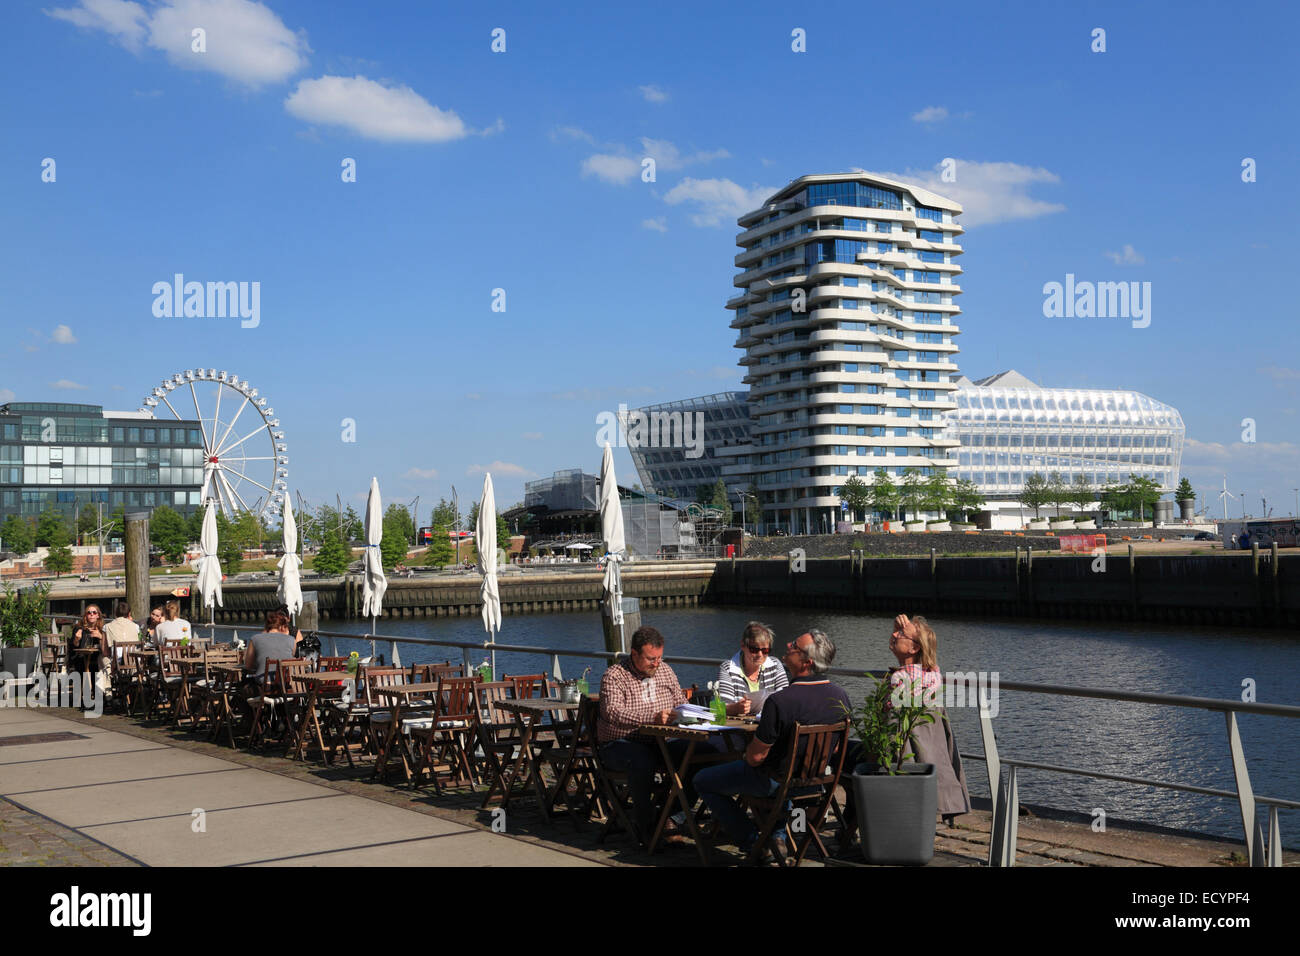 Café à Dalmannkai, vue de la tour de Marco Polo et Unilever construire, Hafencity, Hambourg, Allemagne, Europe Banque D'Images